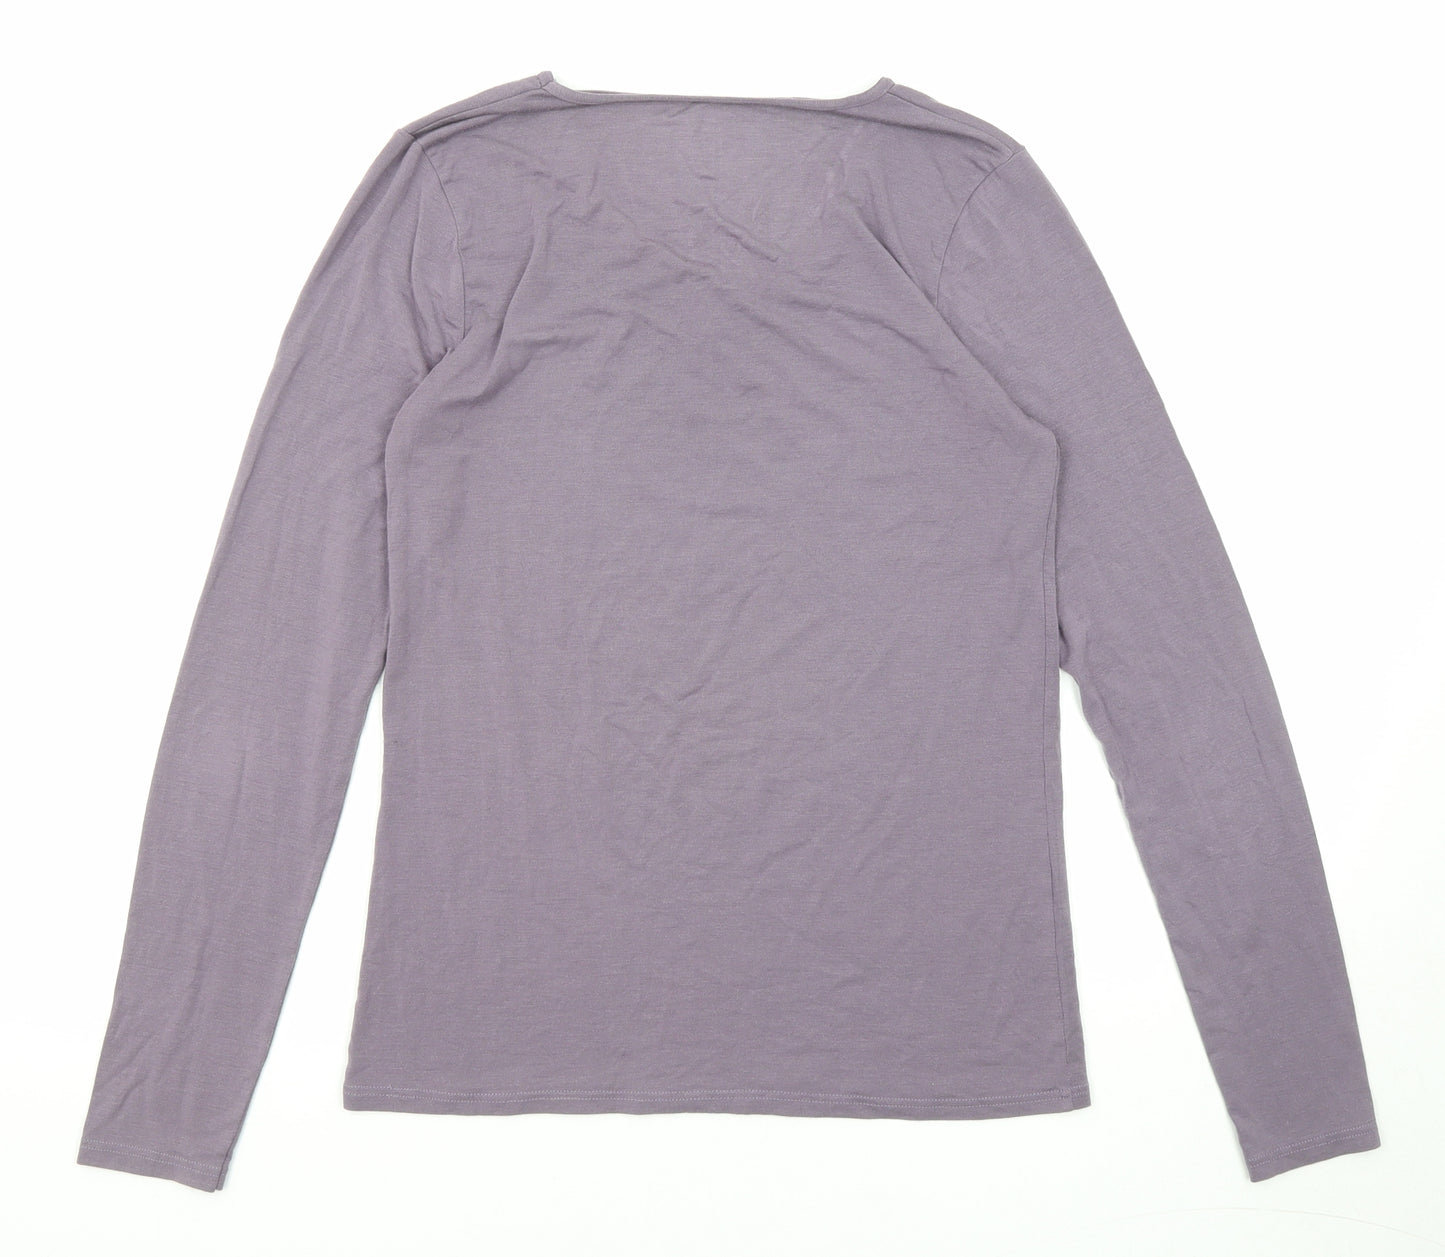 John Lewis Womens Purple Acrylic Basic T-Shirt Size 12 Round Neck